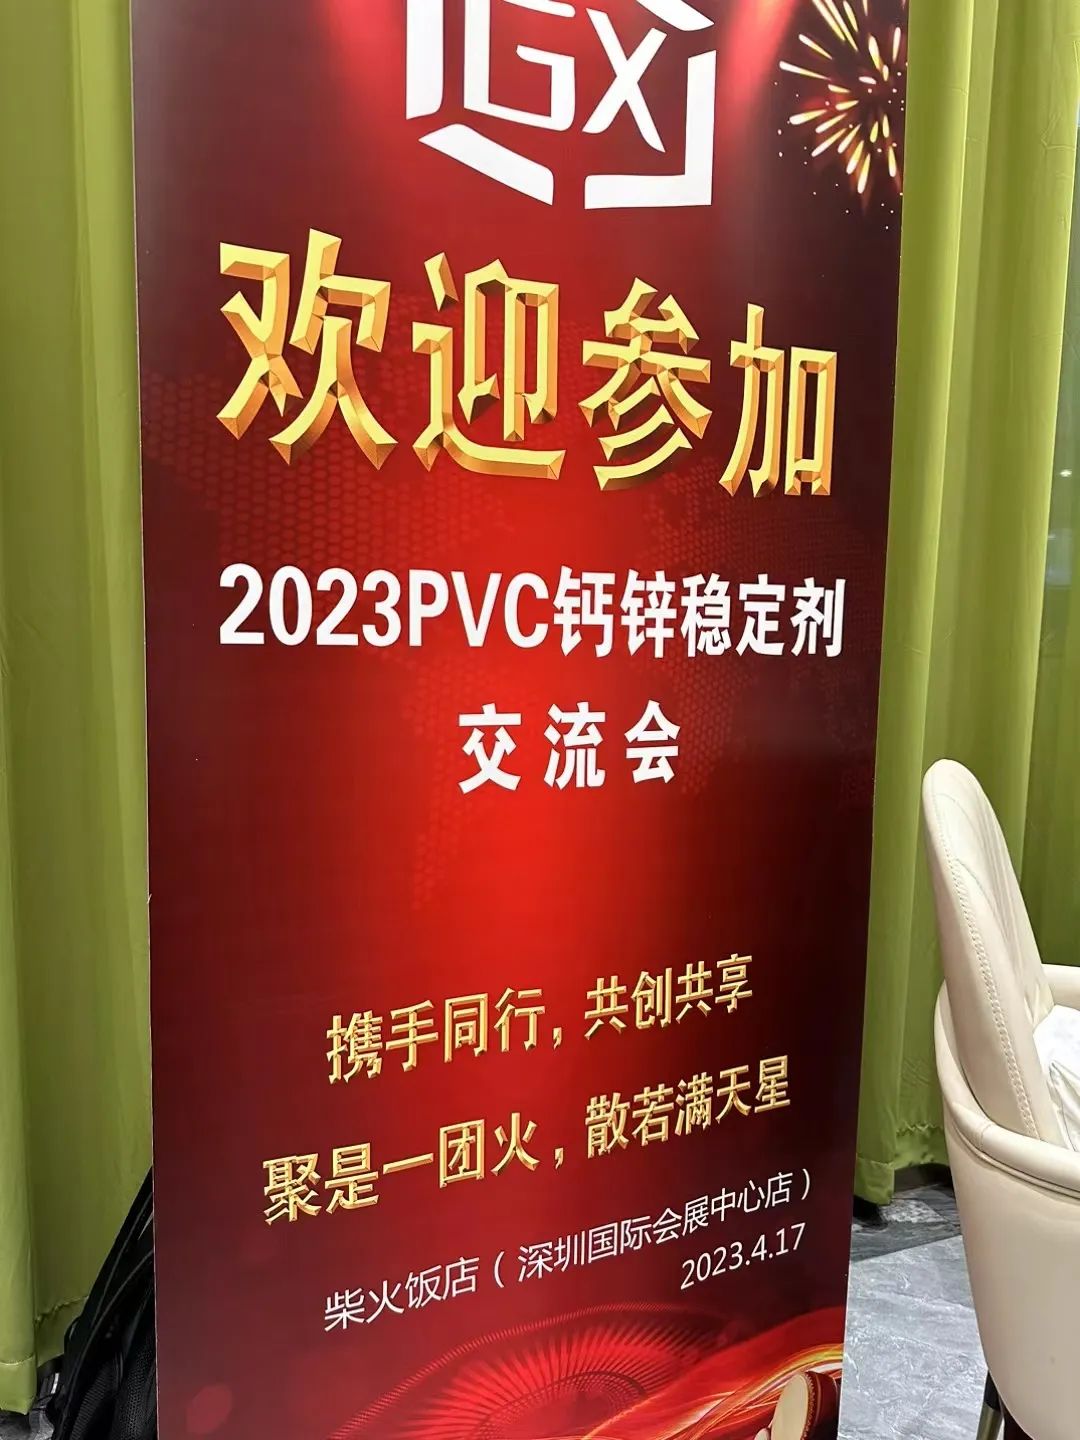 2023年PVC鈣鋅穩定劑交流會成功舉辦